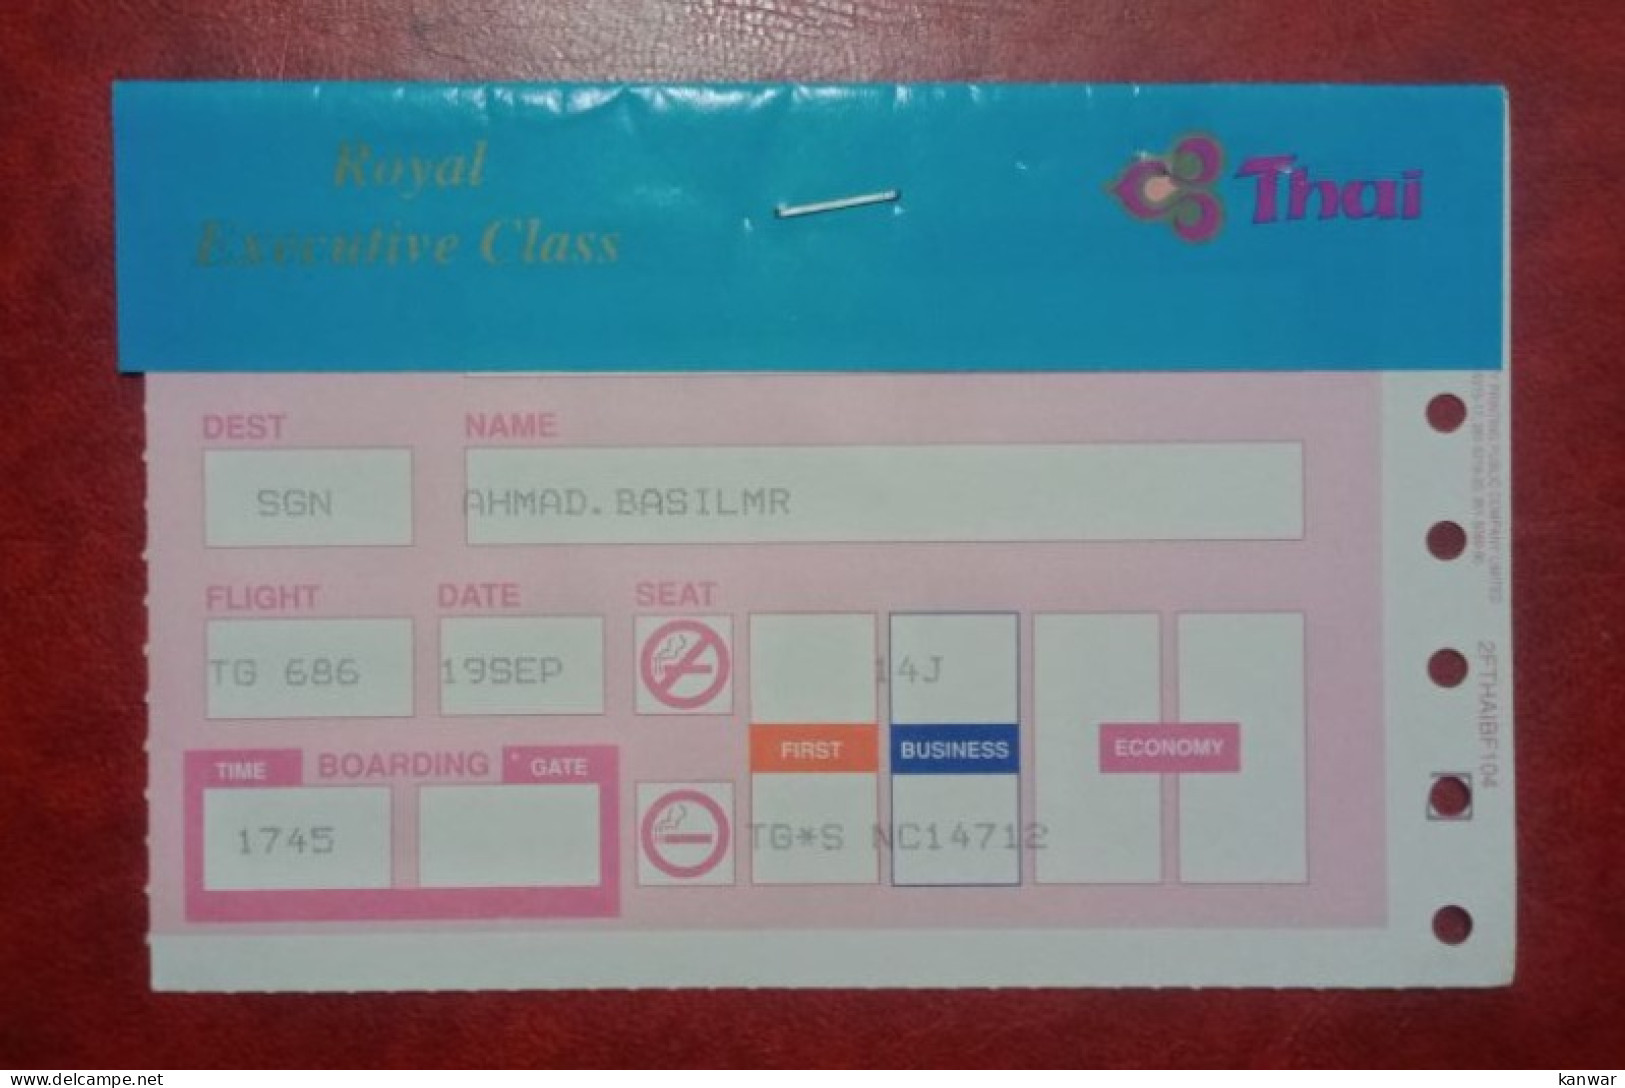 THAI AIRLINES PASSENGER BOARDING PASS ROYAL EXECUTIVE CLASS - Instapkaart